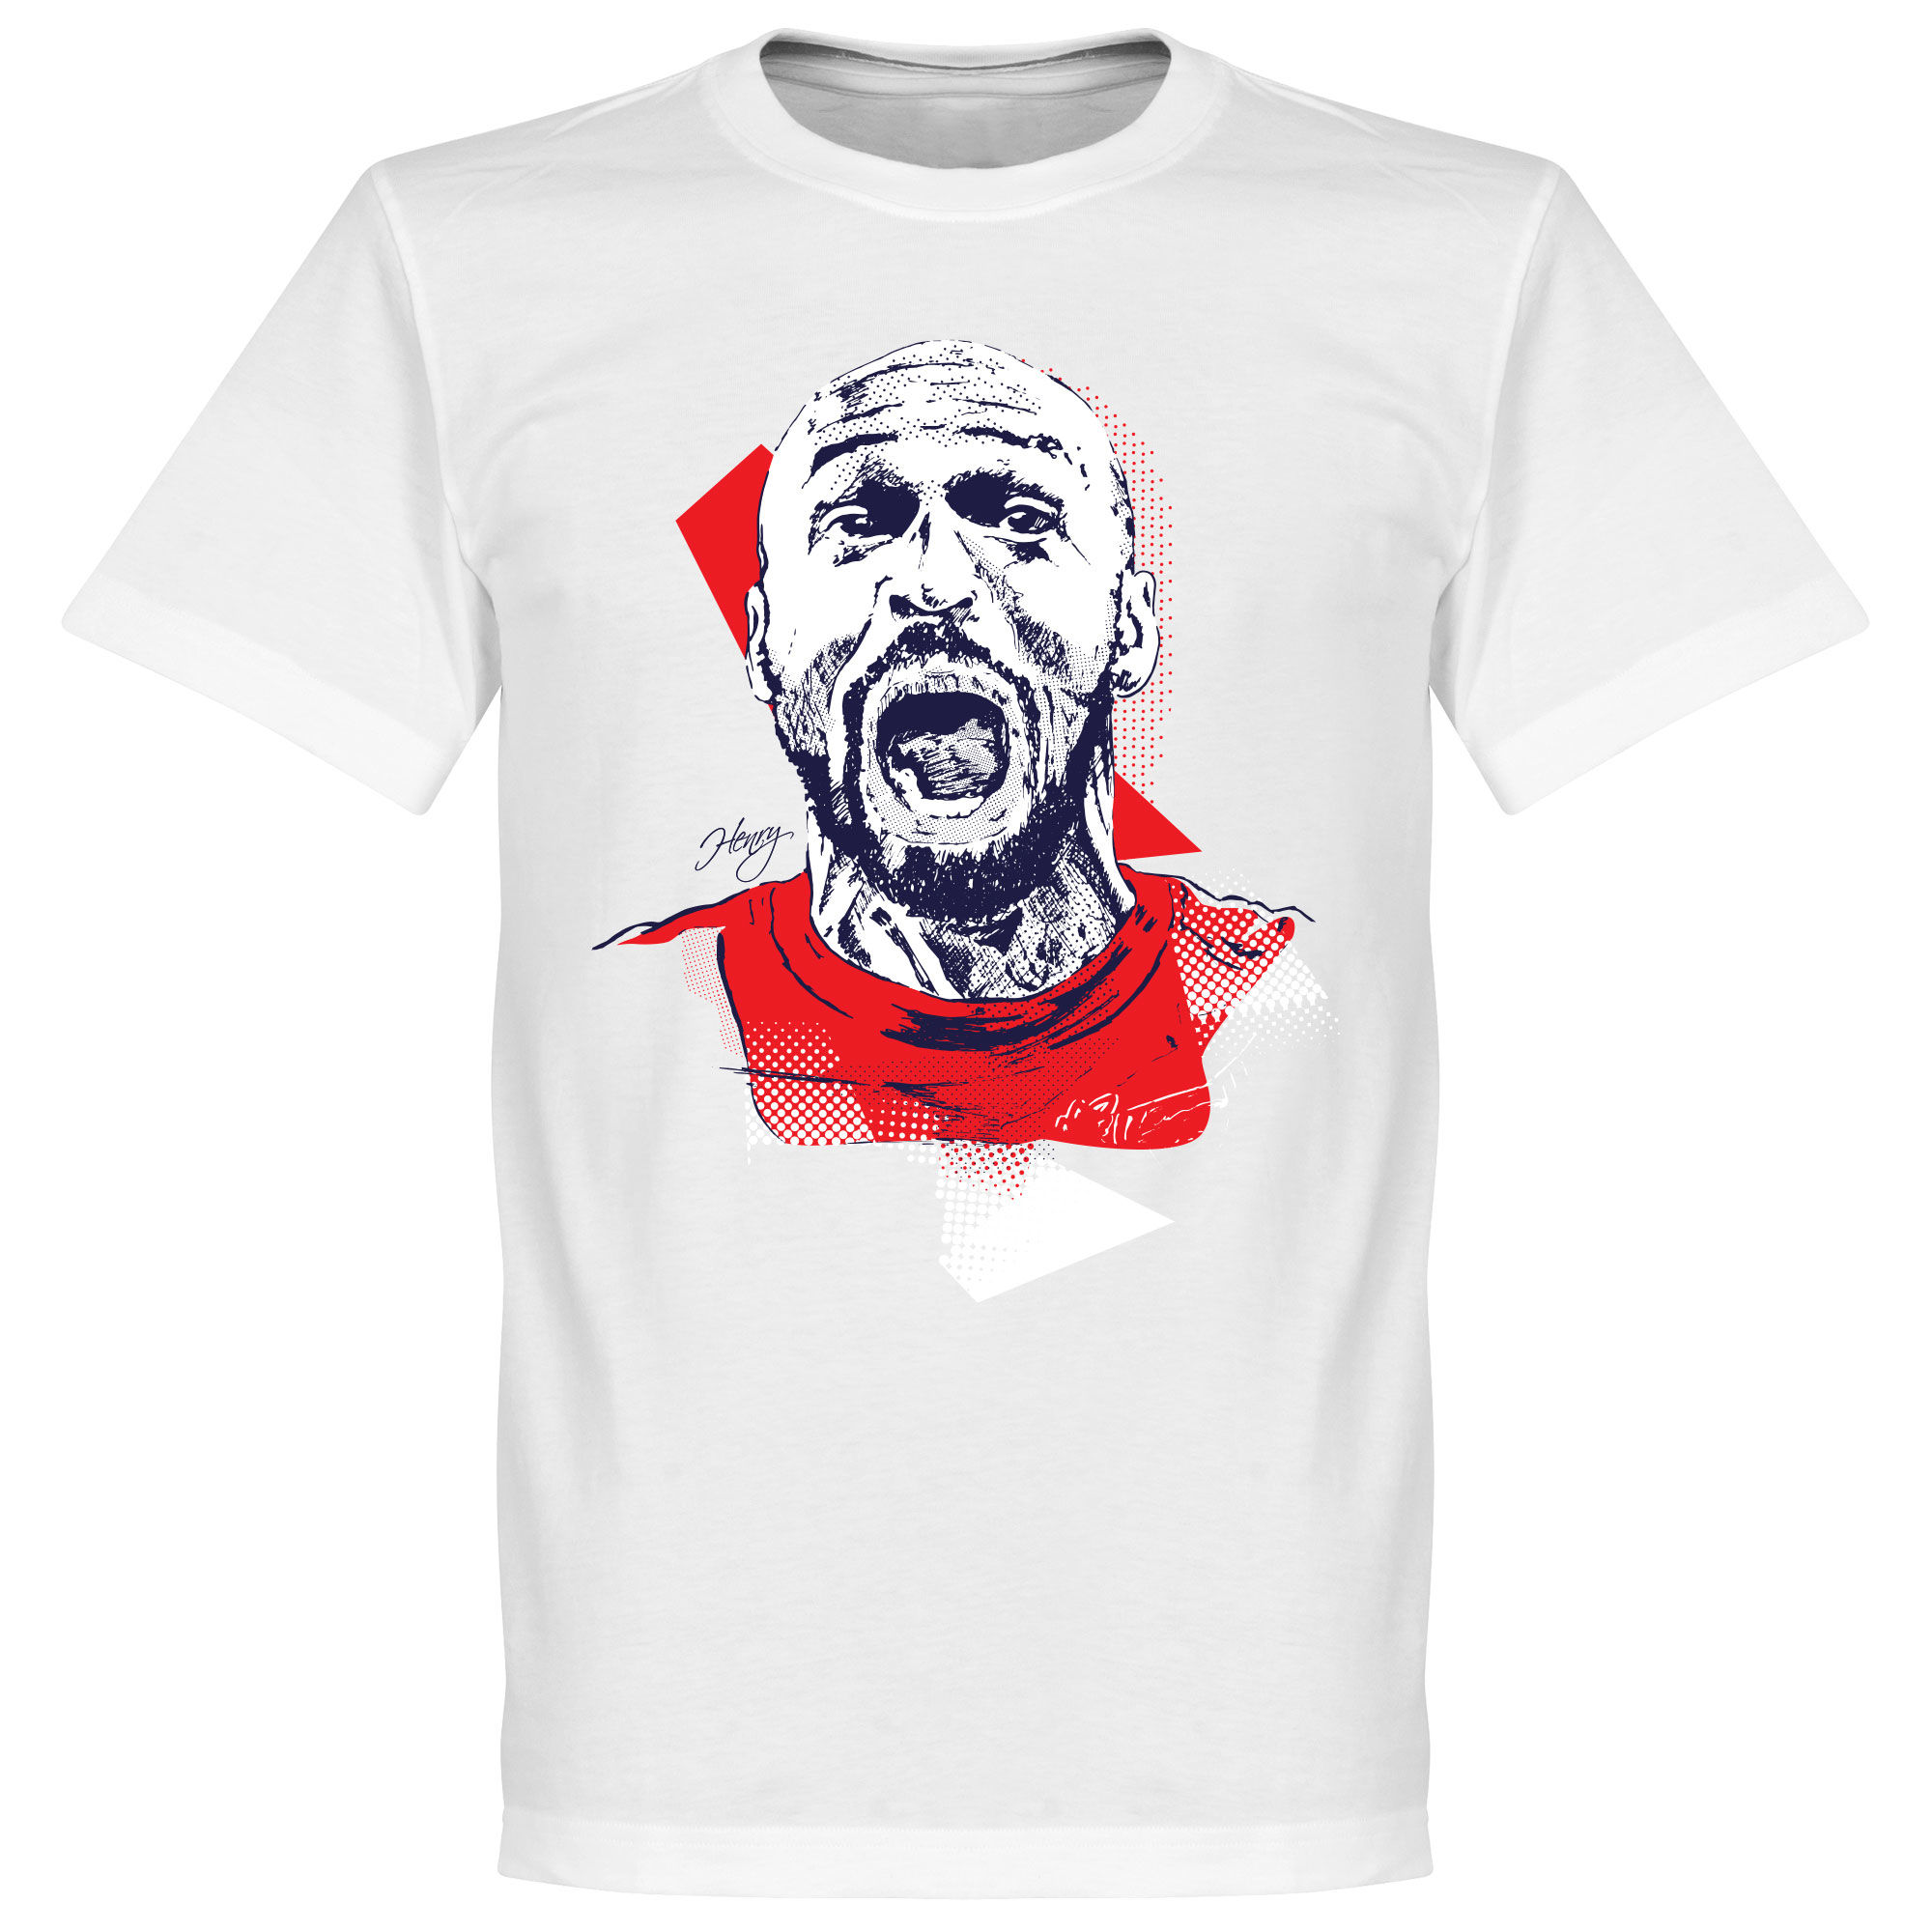 Arsenal - Tričko "Backpost" - bílé, Thierry Henry